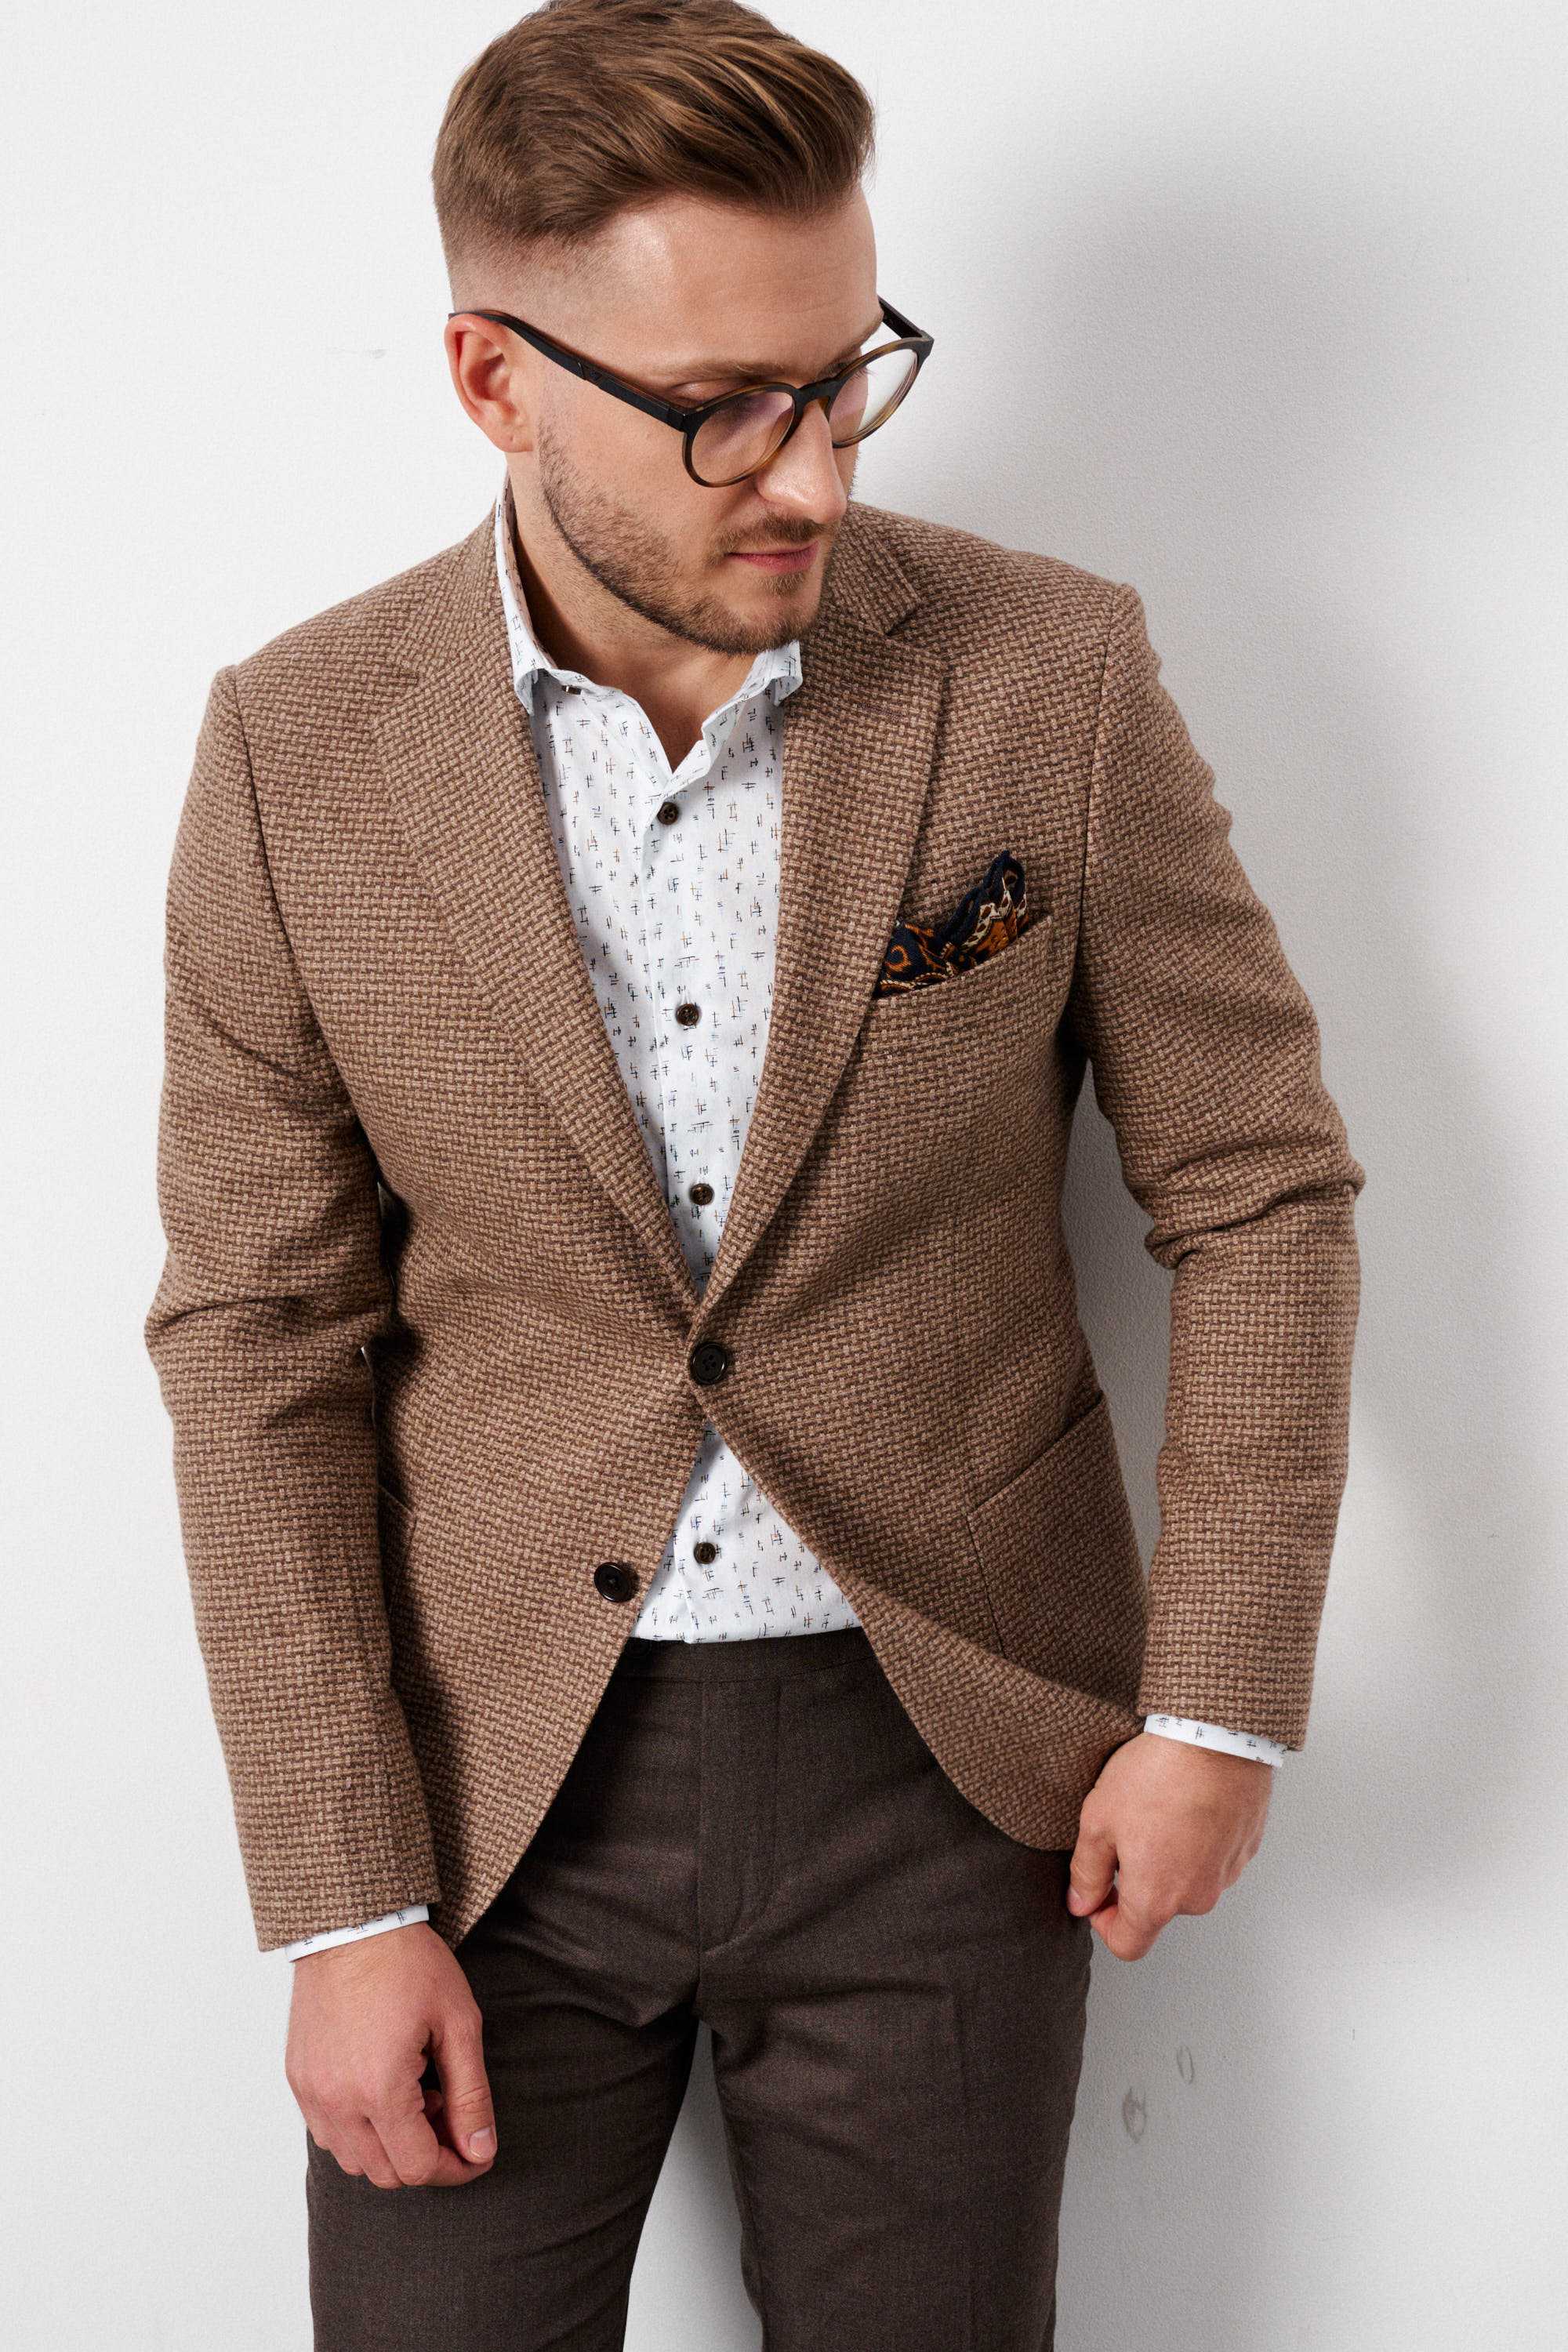 Пиджак мужской бежево-коричневый, фактурный, с накладными карманами